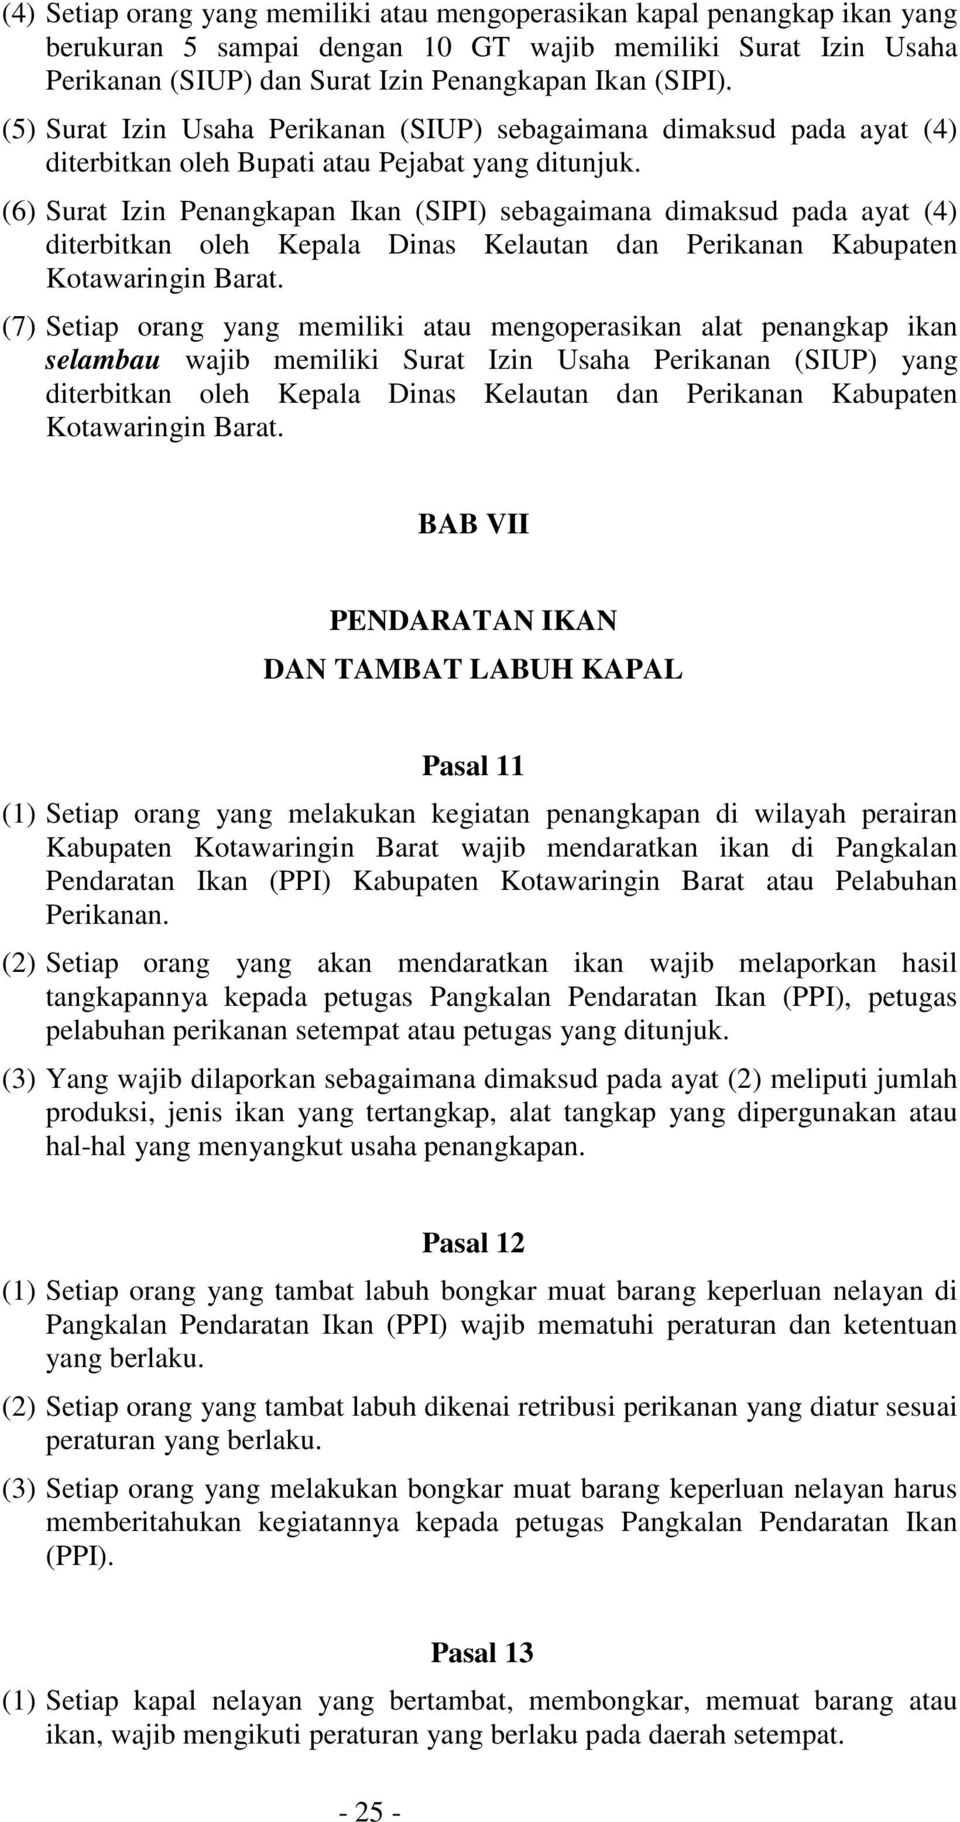 (6) Surat Izin Penangkapan Ikan (SIPI) sebagaimana dimaksud pada ayat (4) diterbitkan oleh Kepala Dinas Kelautan dan Perikanan Kabupaten Kotawaringin Barat.